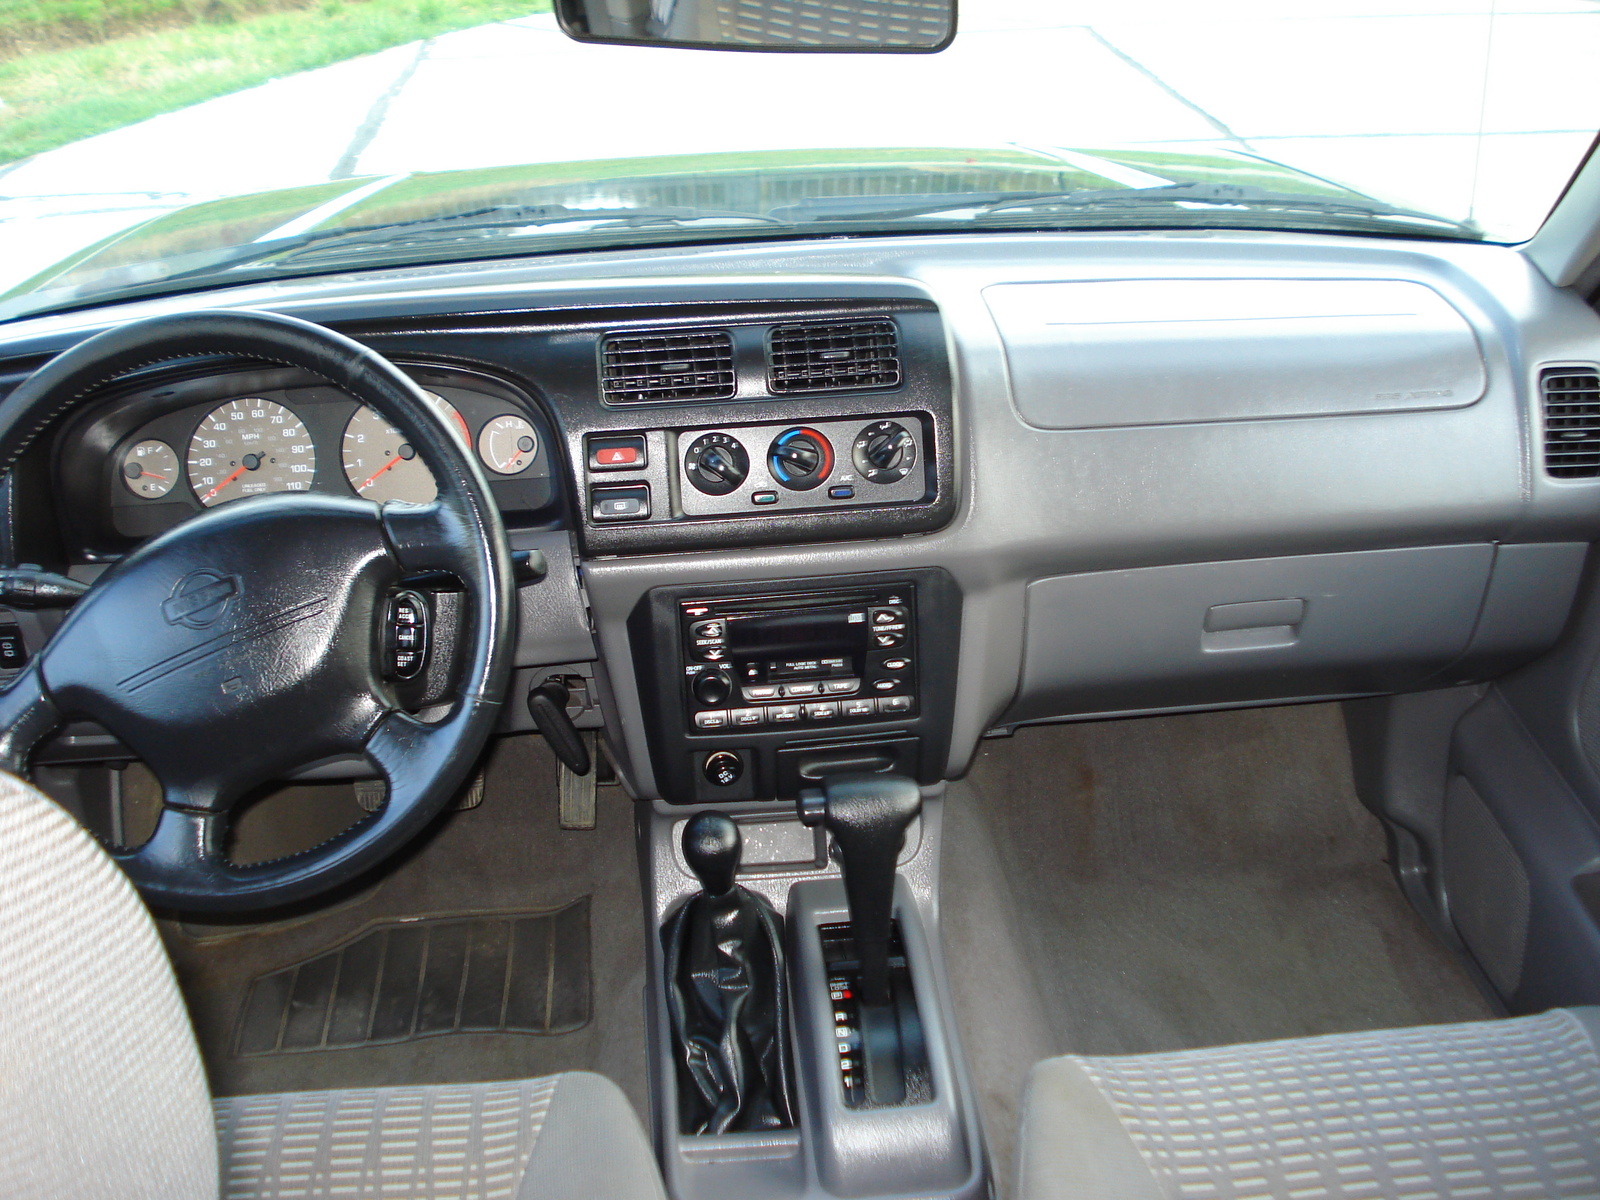 2000 Nissan xterra seats #2